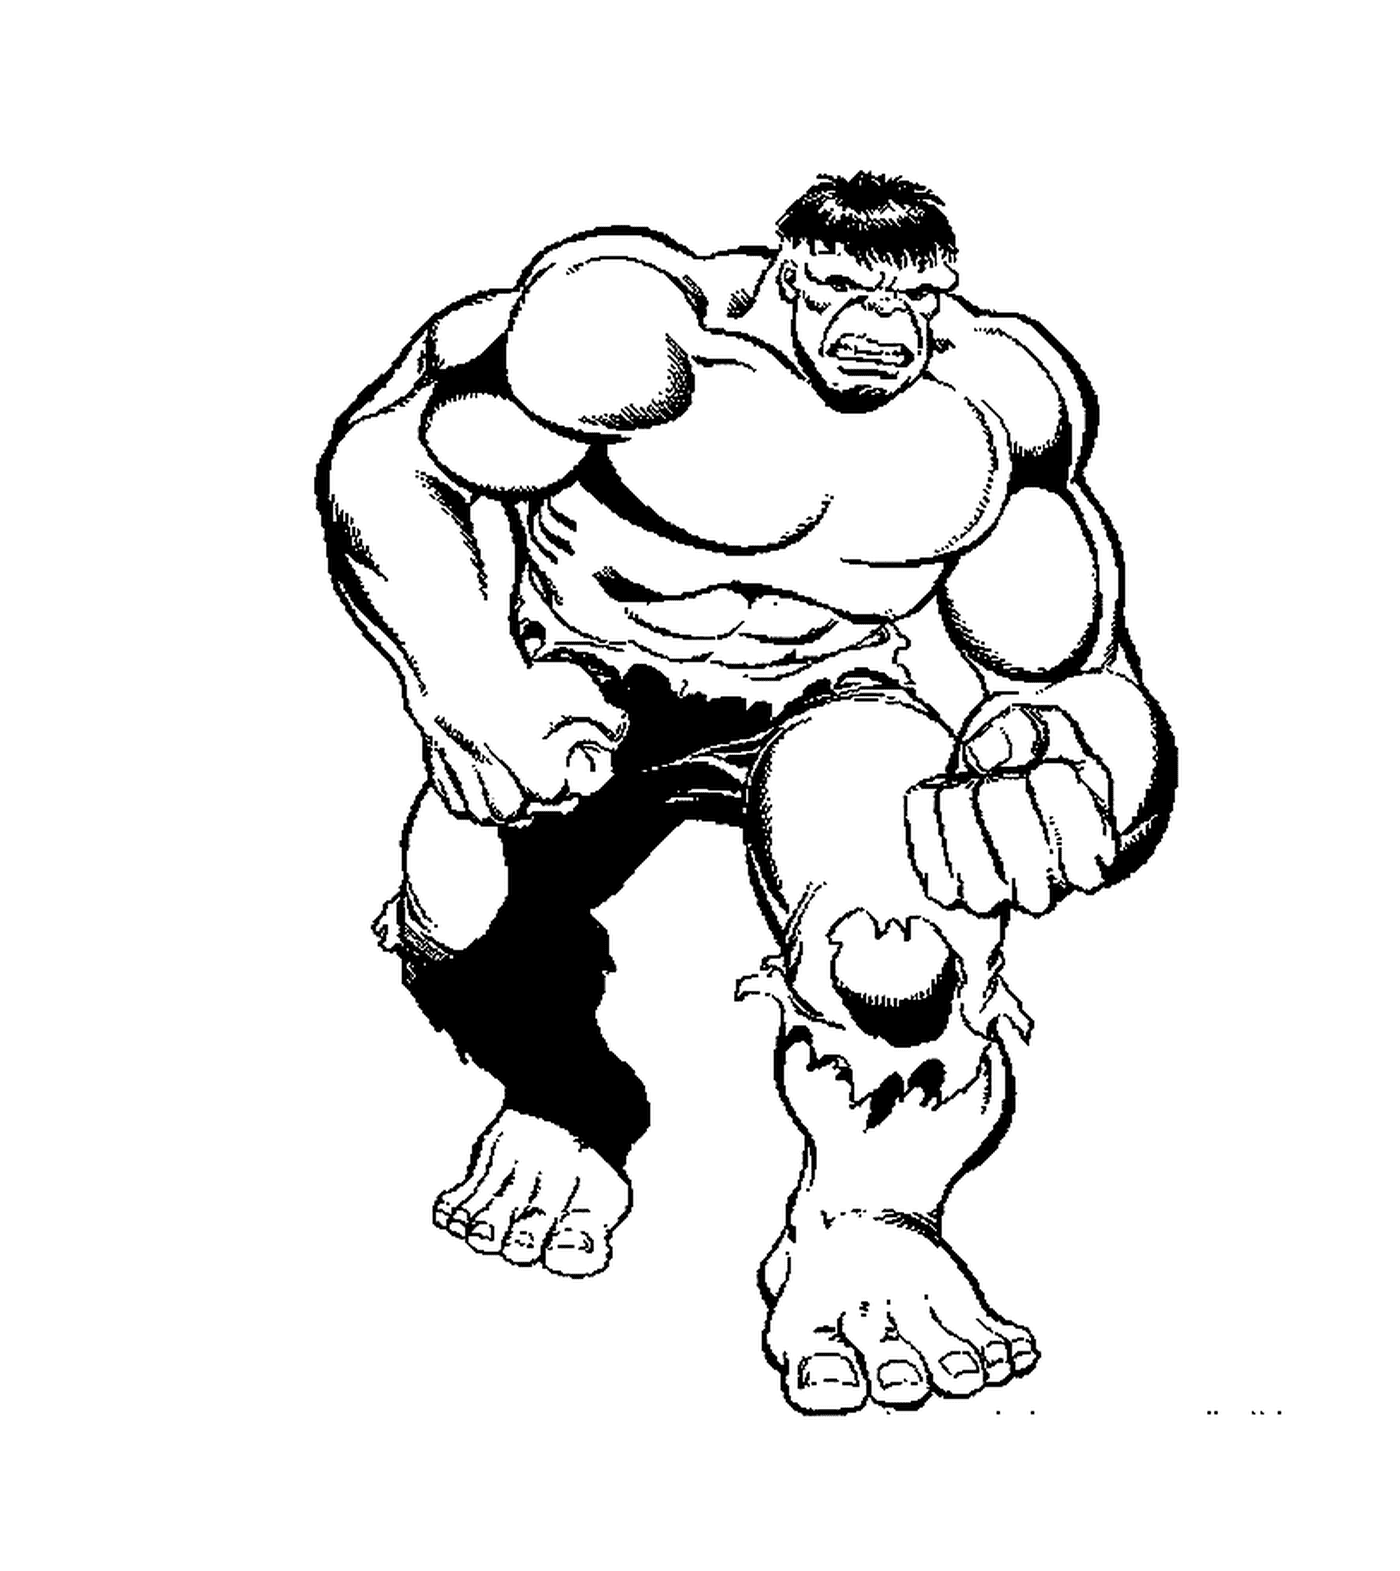  Hulk, versión simple 